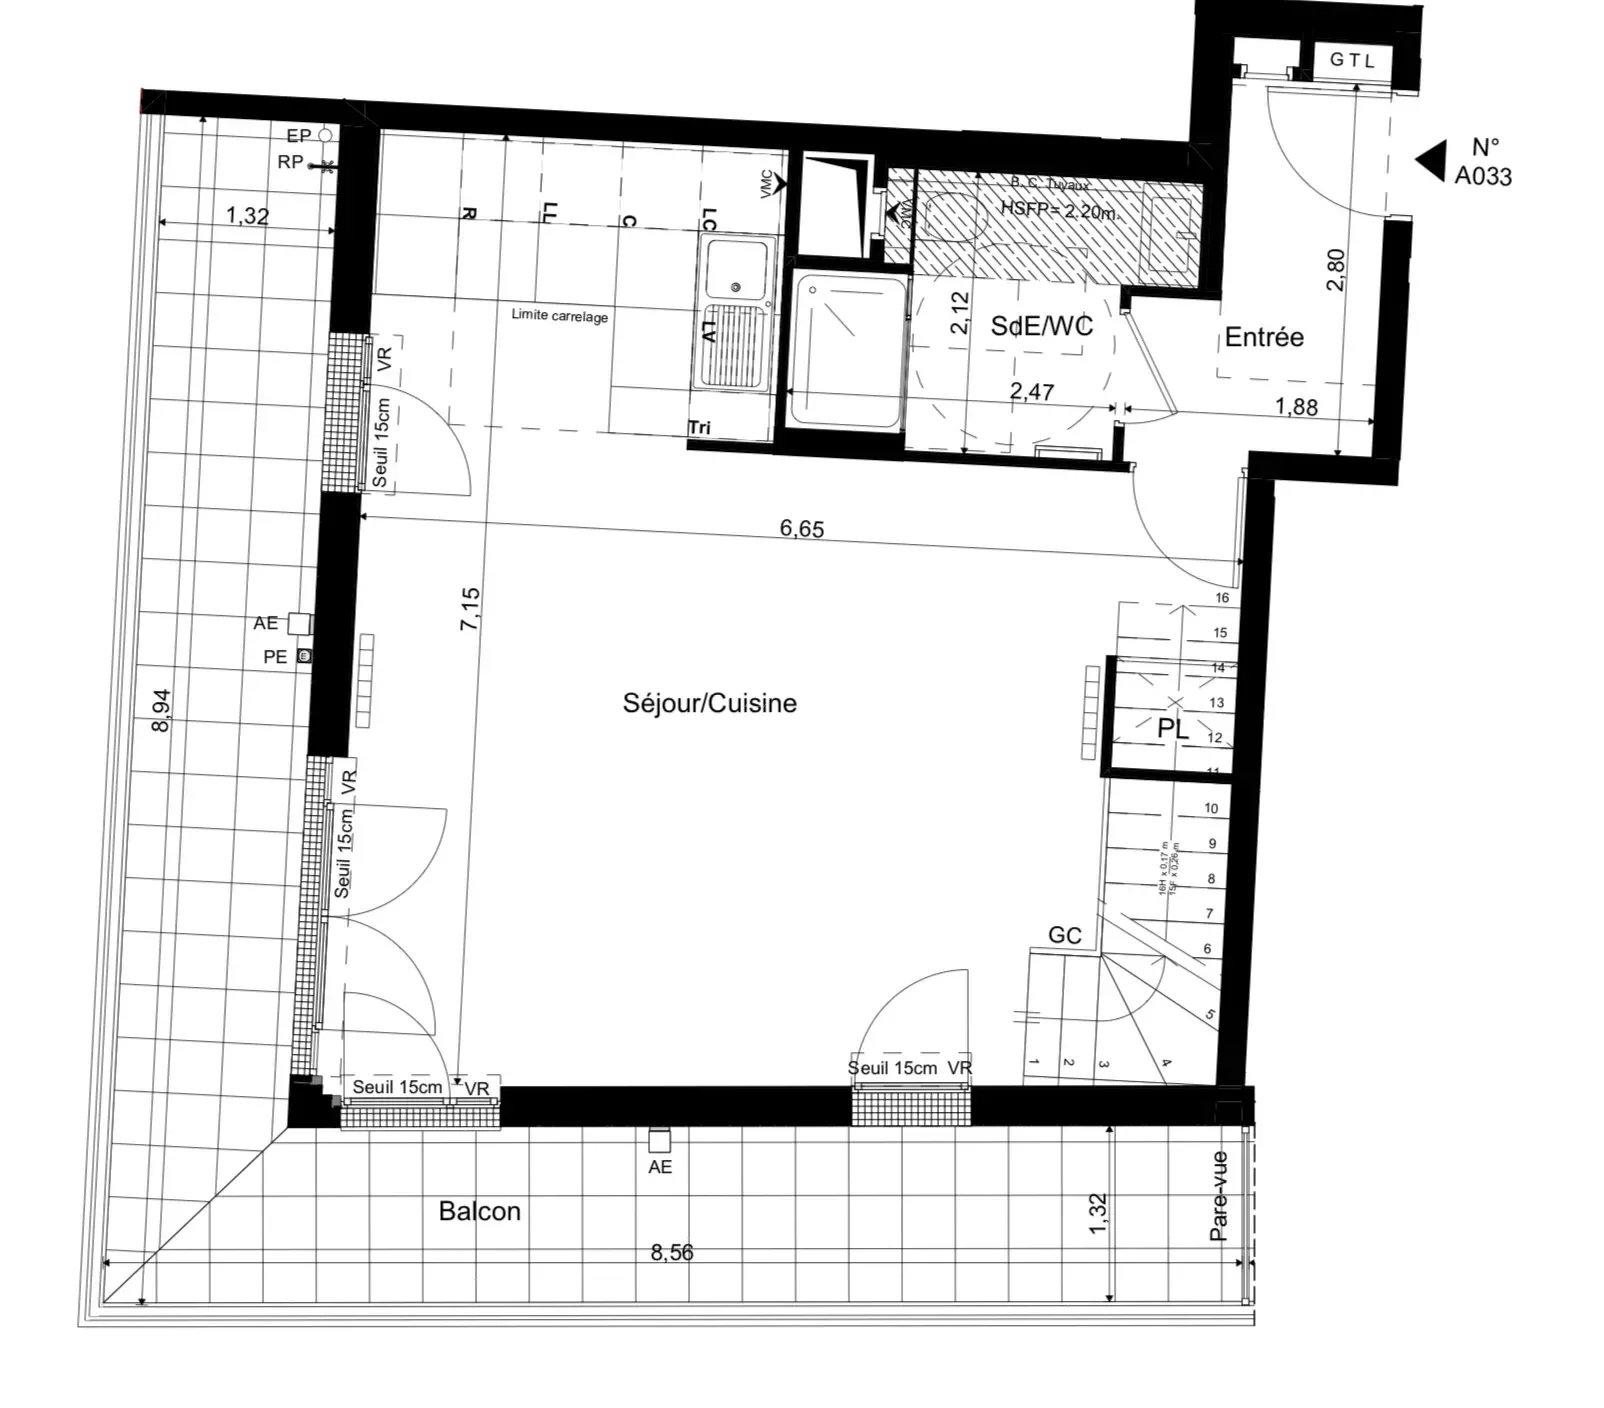 For Sale - New Development - 3-Bedroom Duplex - Suresnes (92)